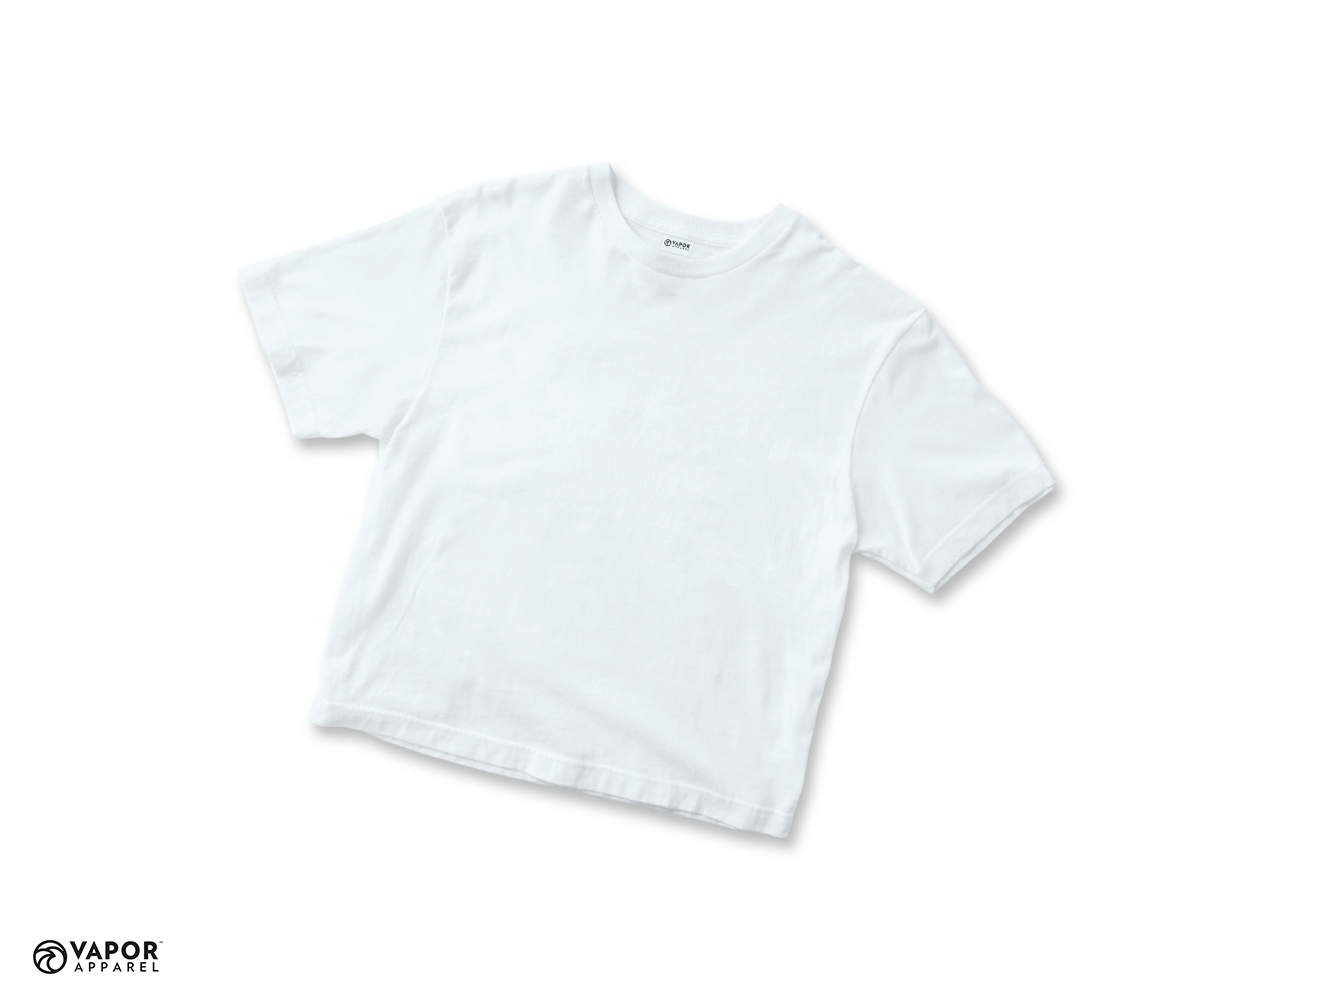 Vapor Sublimation T-Shirt for Junior size 128 - White